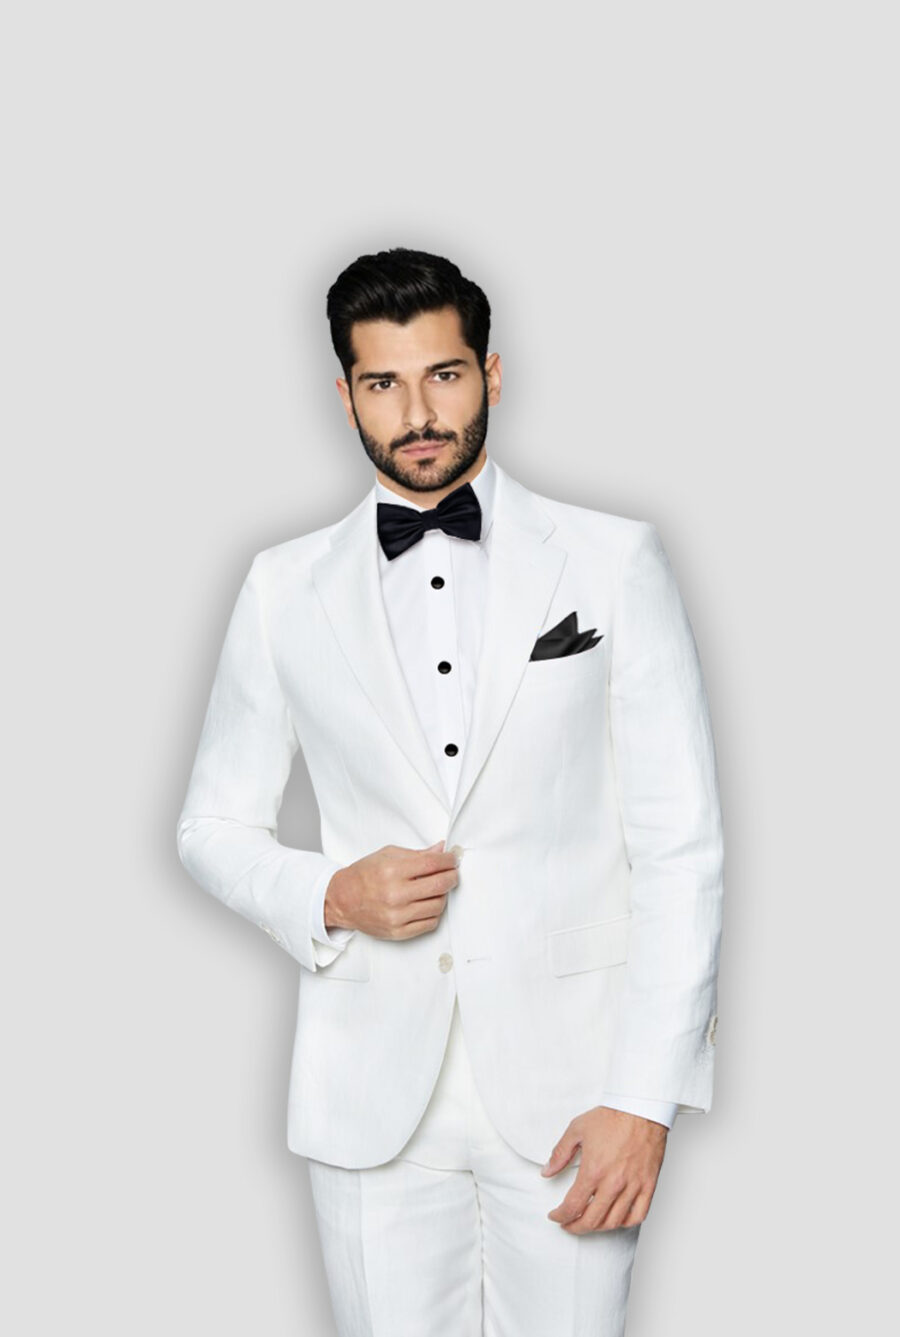 Mens Linen Suit, Men White Linen Suit